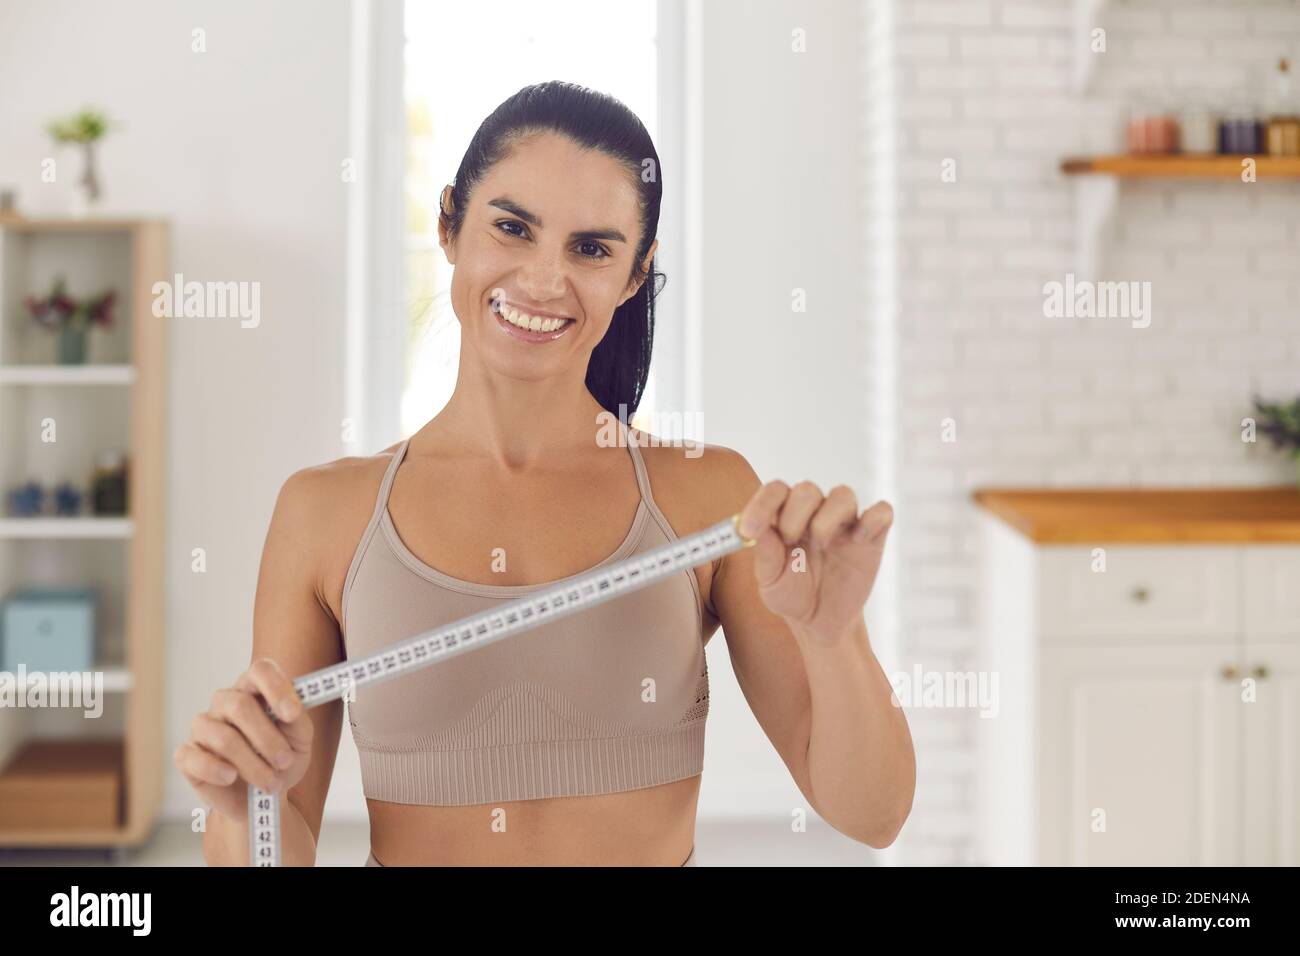 Weight Loss Coach hält Band messen, lächeln und motivieren Sie, um Ihren Körper perfekt zu machen Stockfoto